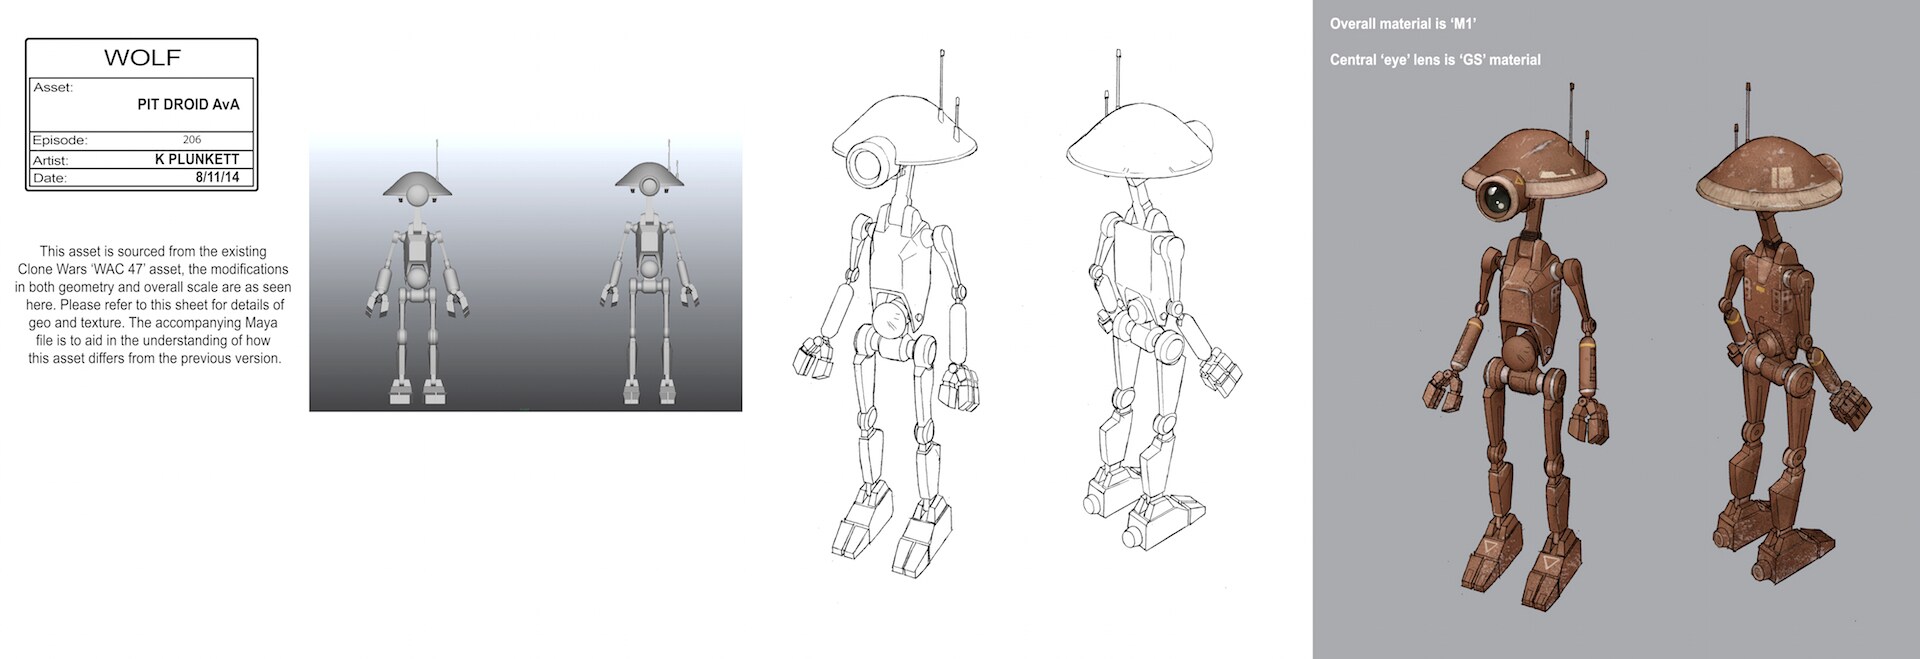 Pit droid sketch by Kilian Plunkett. 